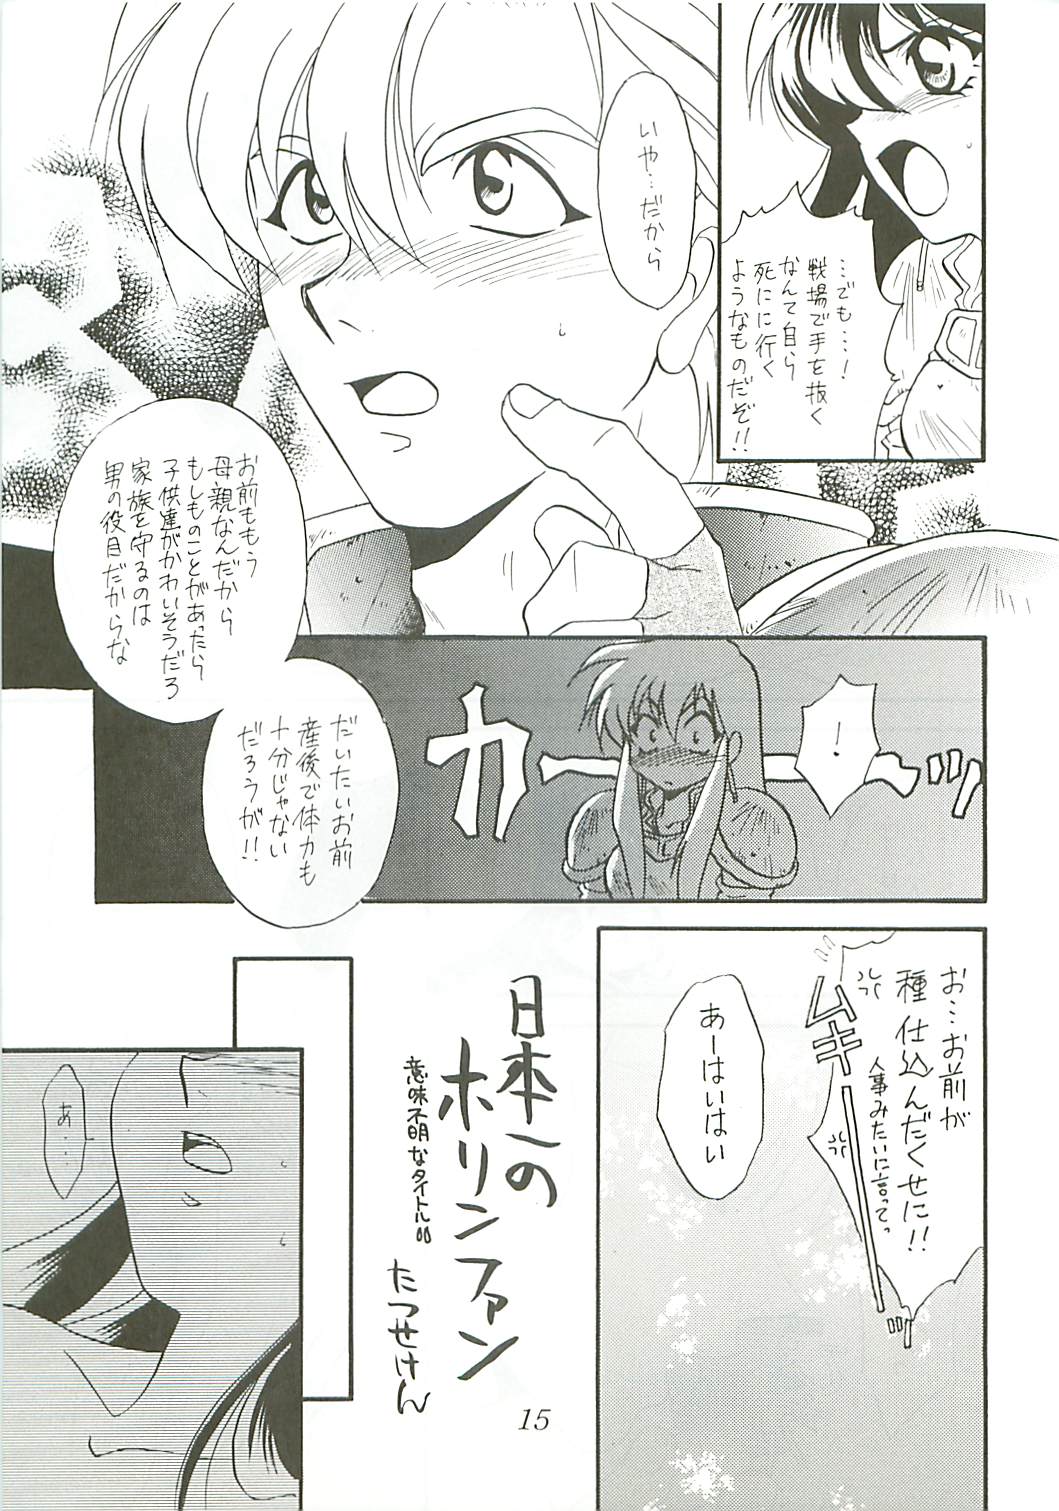 [DARK WATER] Seisen no keifu page 15 full